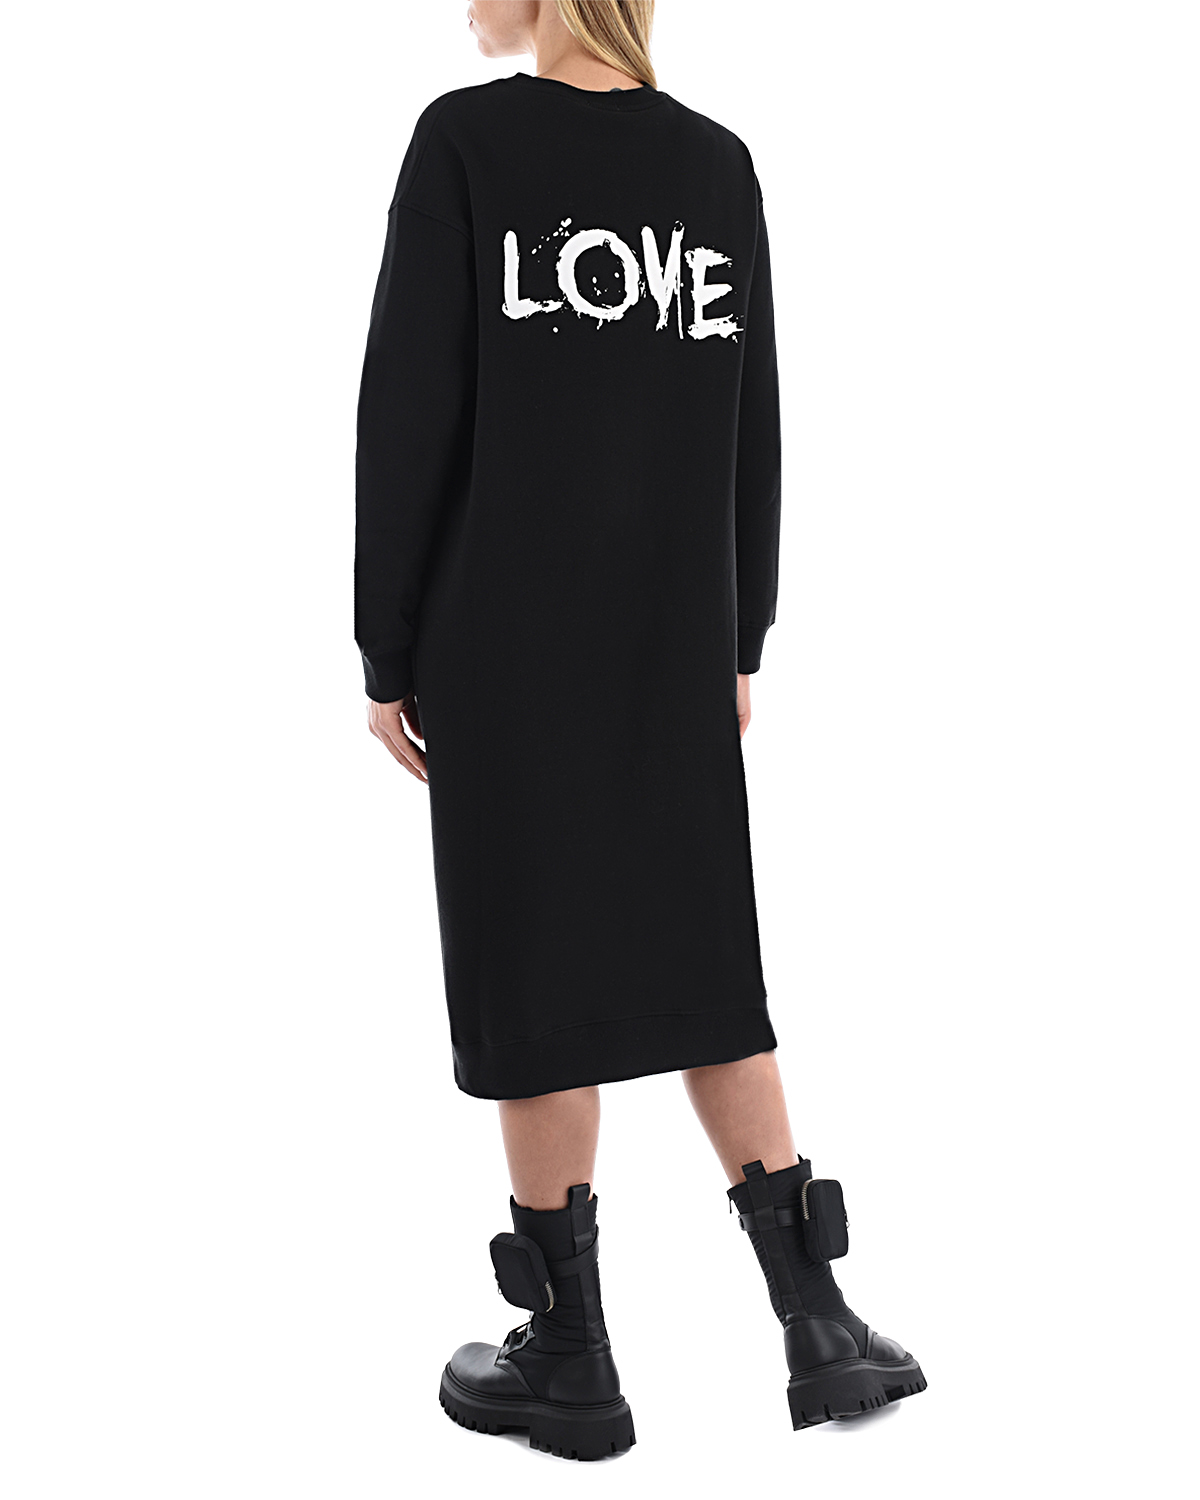 Черное платье с принтом "Free Love" 5 Preview, размер 38, цвет черный - фото 3